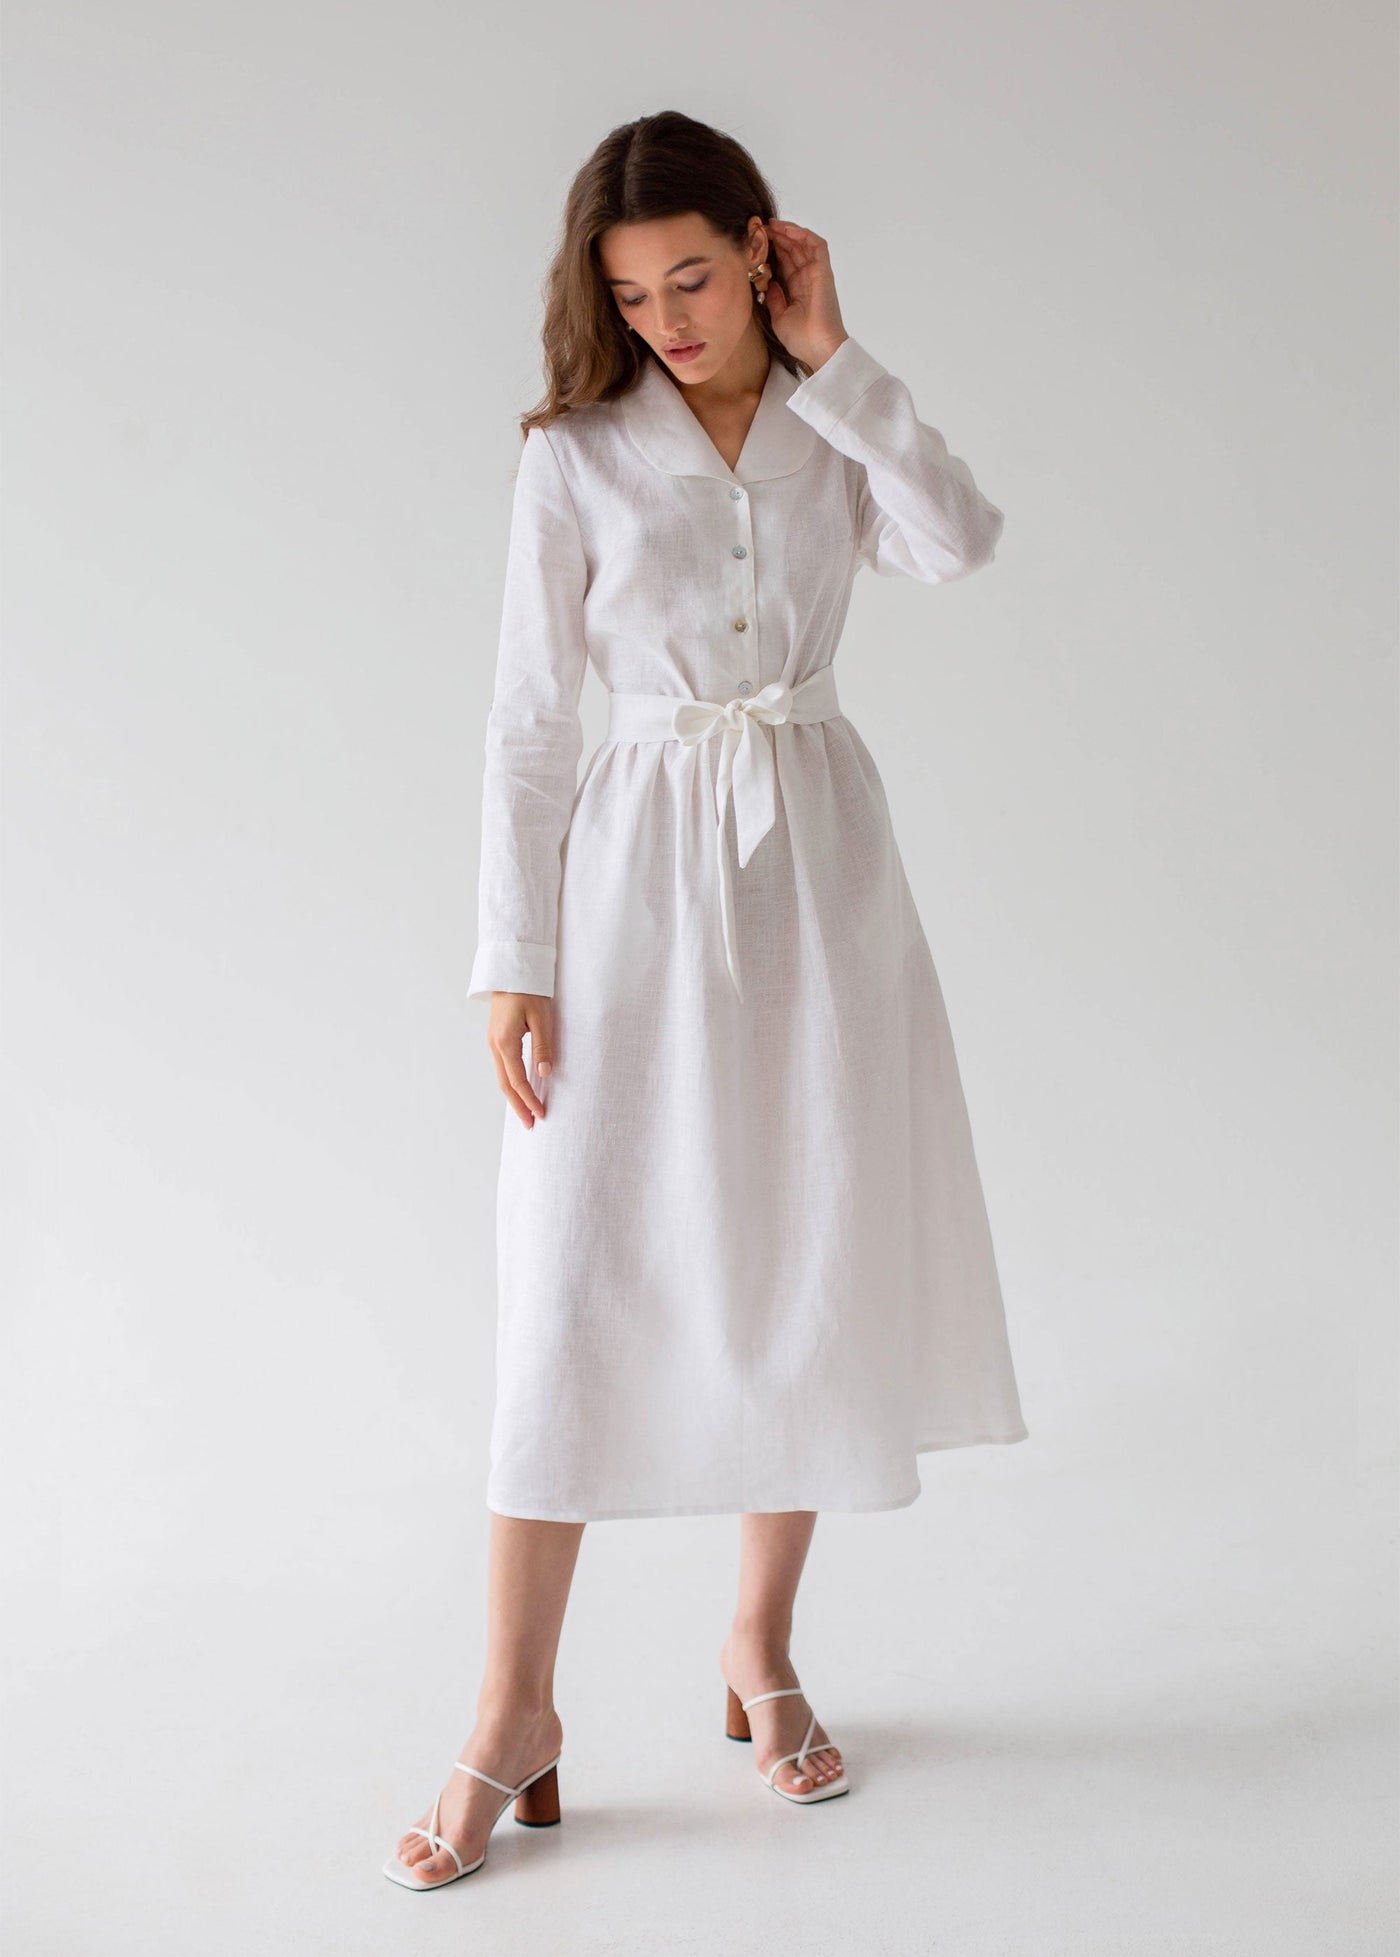 "Daisy" White Linen Dress